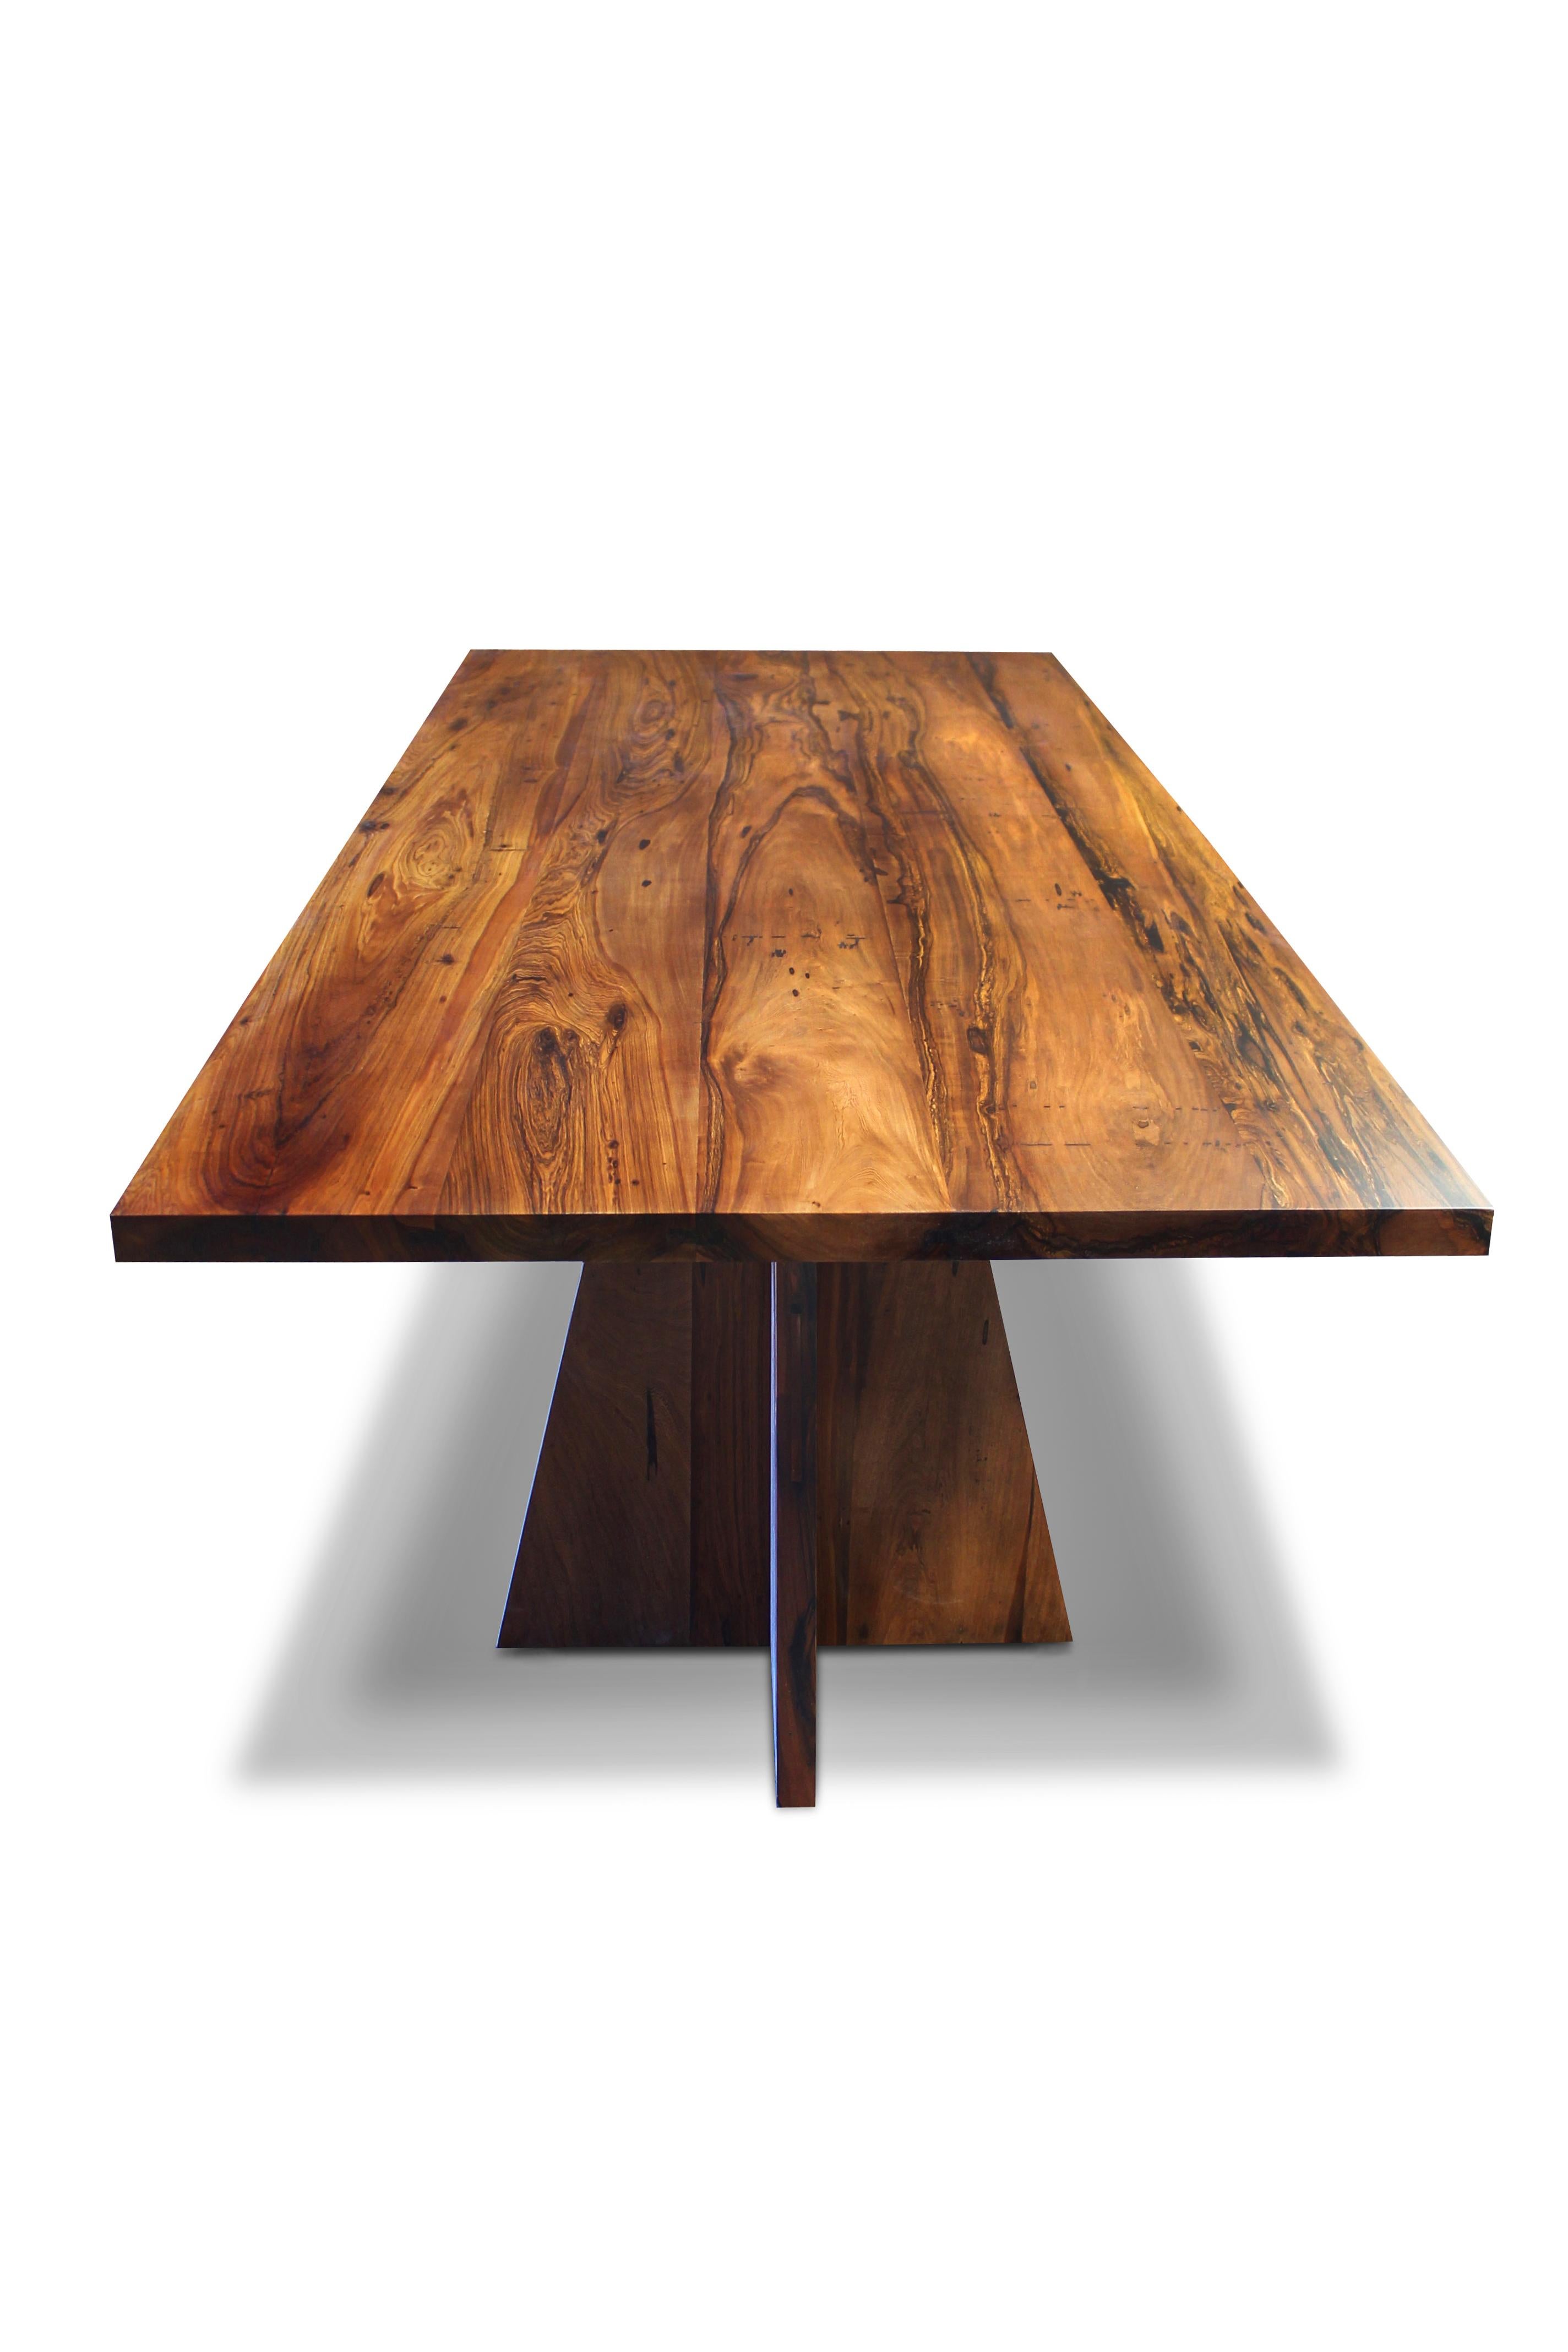 Table moderne à double piédestal en bois exotique massif, Luca

Les dimensions sont 96